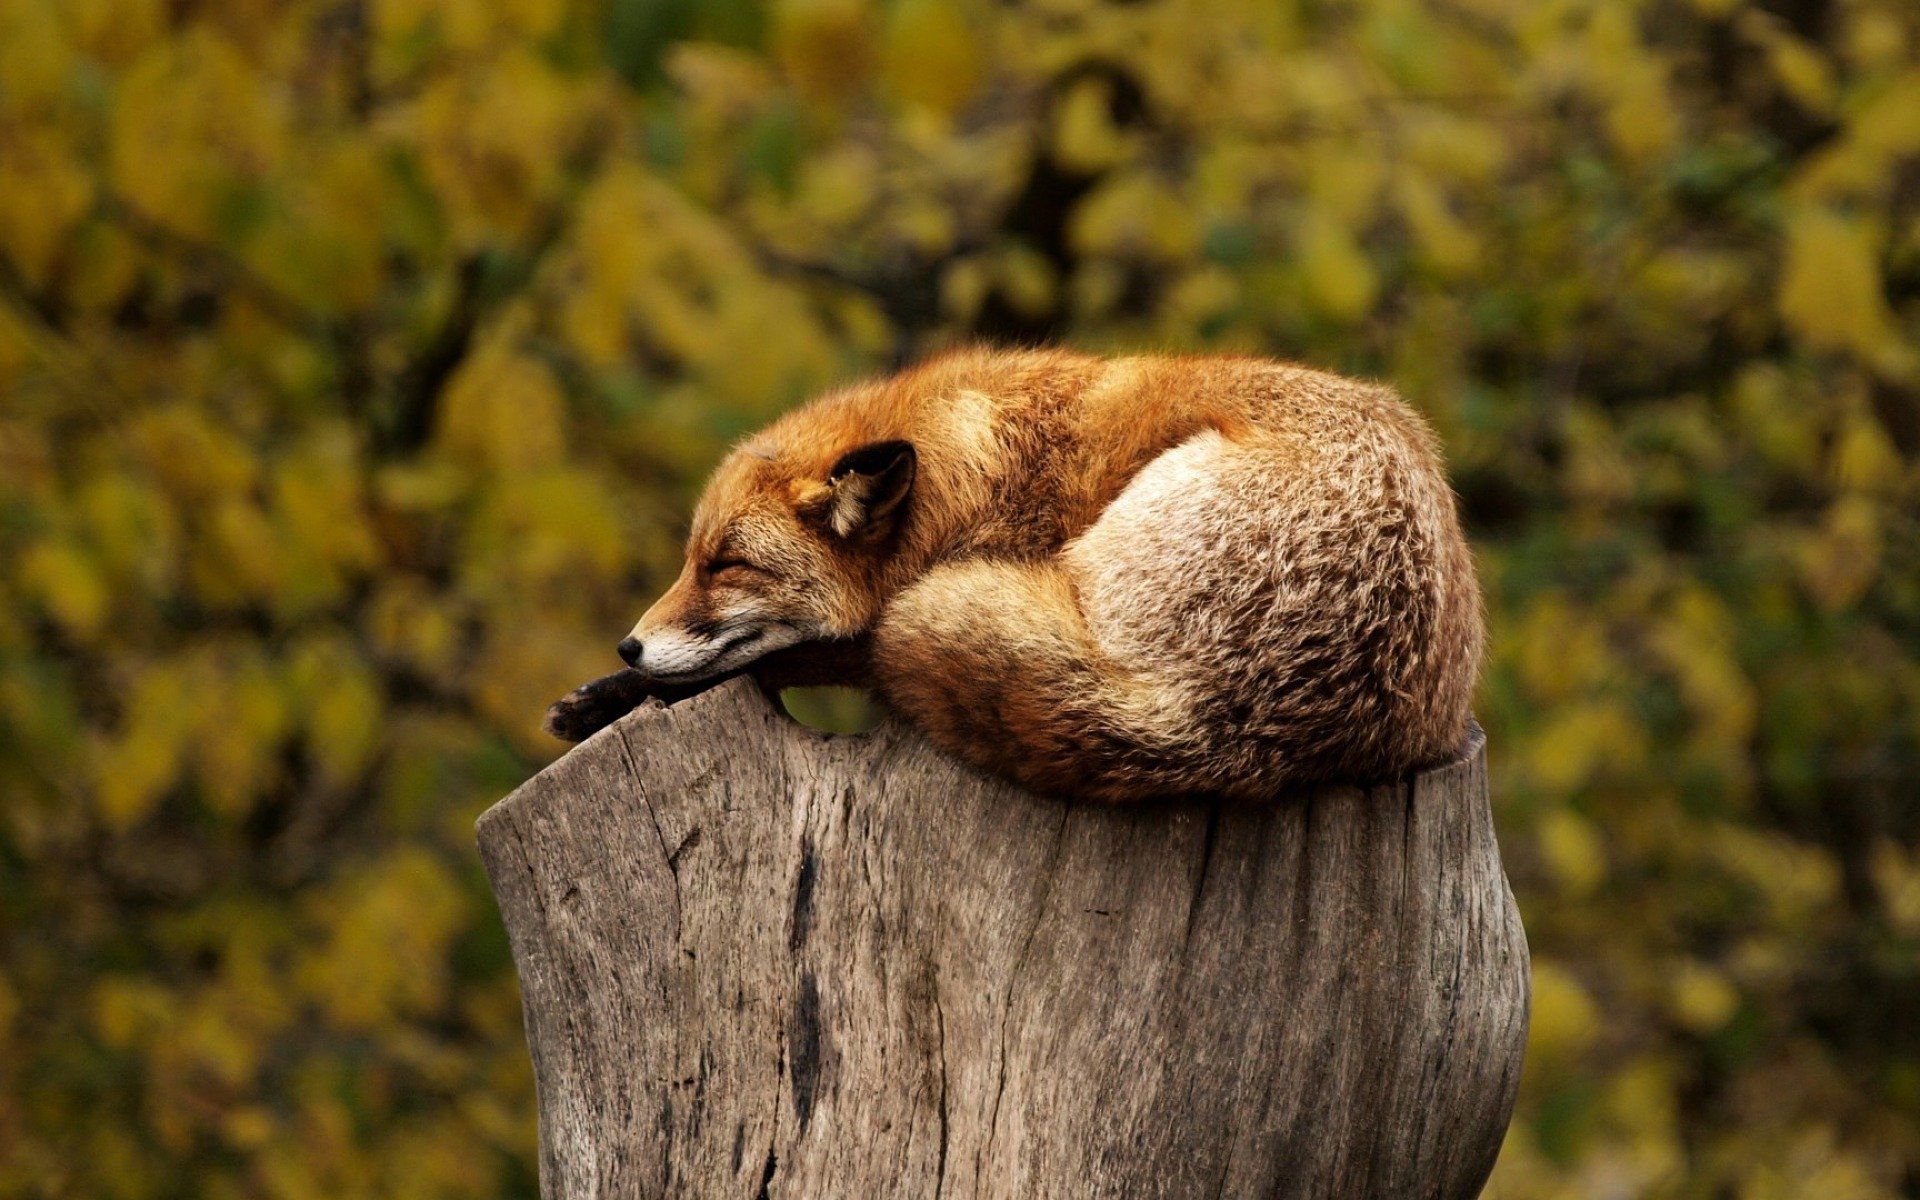 Sleeping fox on a tree